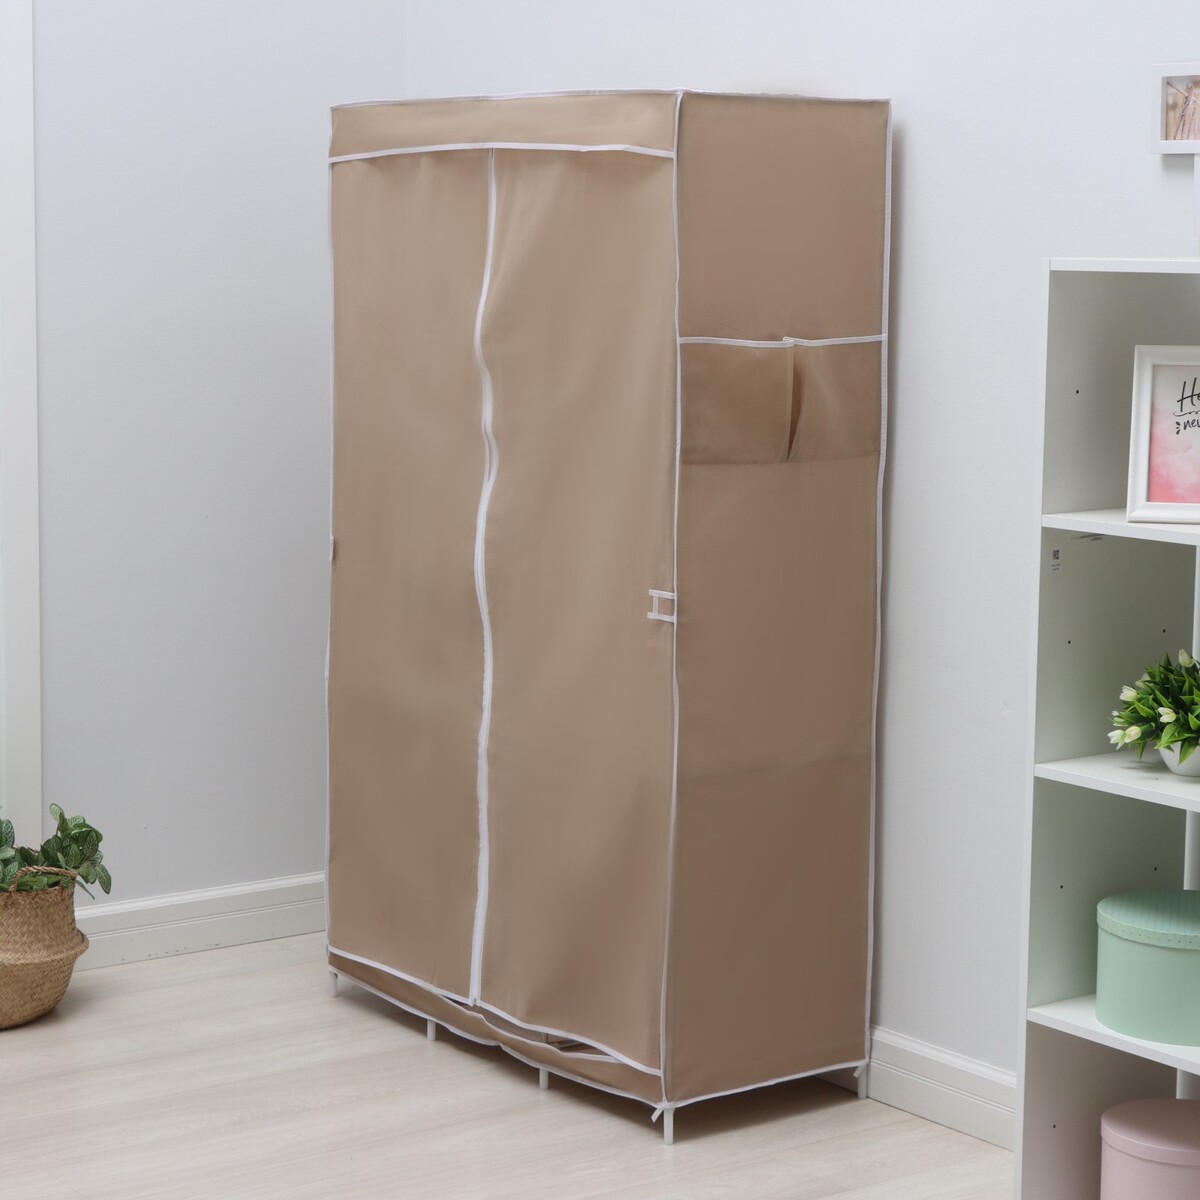 Шкаф тканевый каркасный, складной ladо́m, 103×45×165 см, цвет бежевый шкаф тканевый каркасный складной ladо́m 125×45×168 см серый